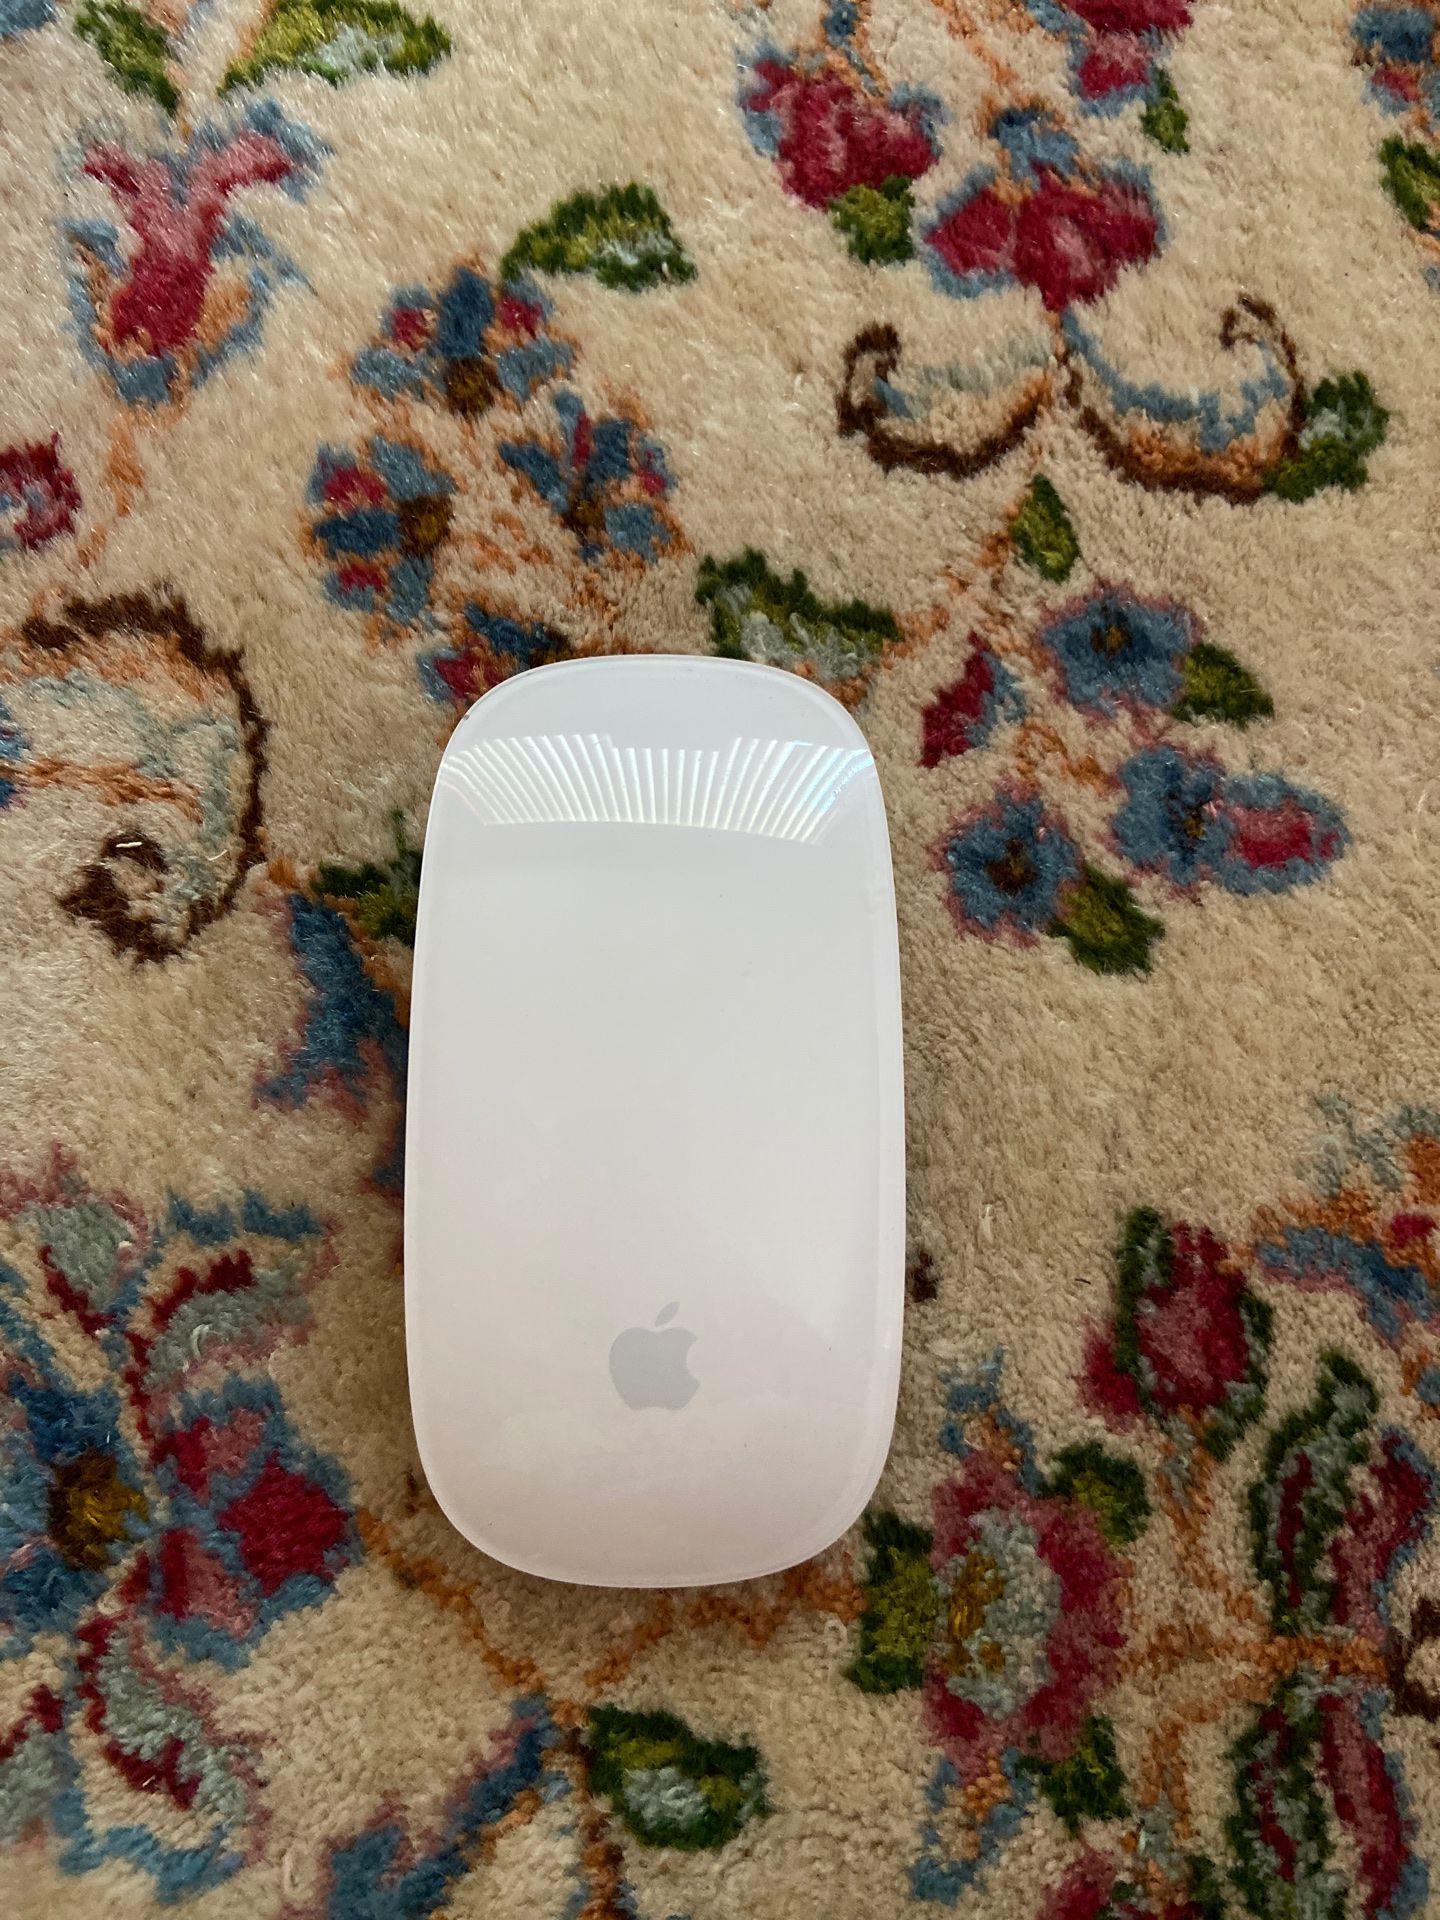 Apple Magic Mouse (1st gen)